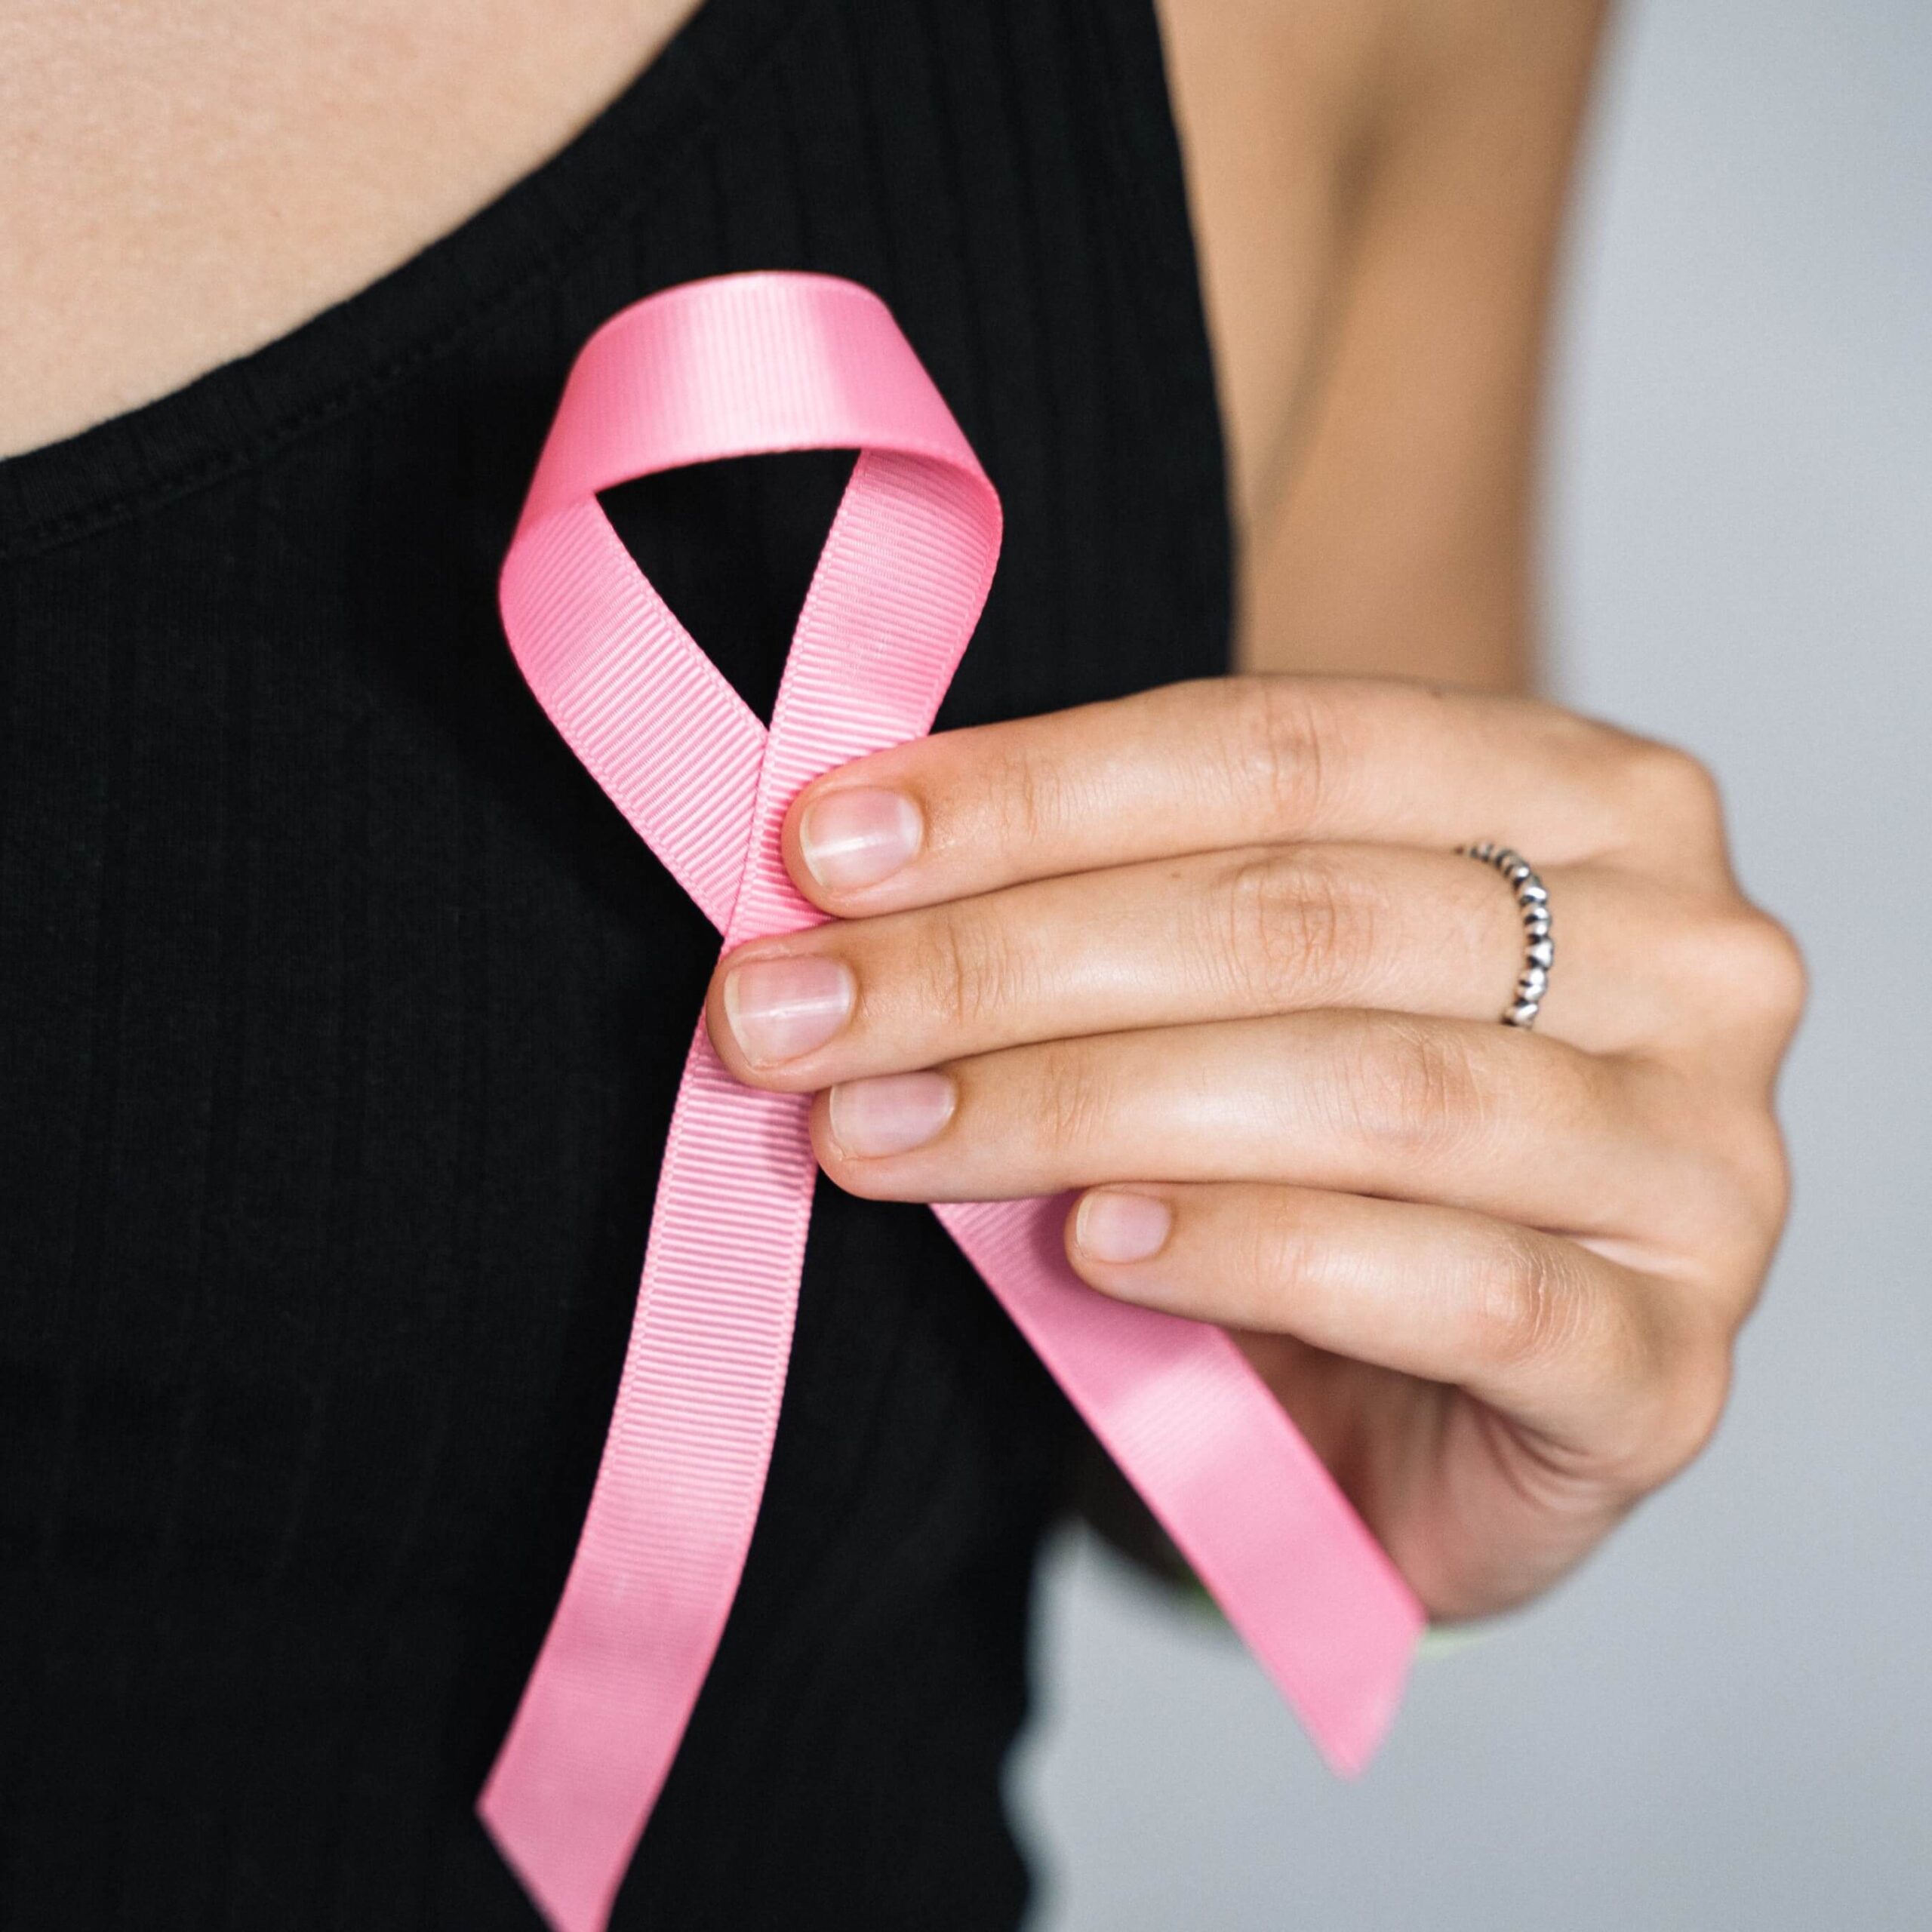 Tumore al seno BRCA